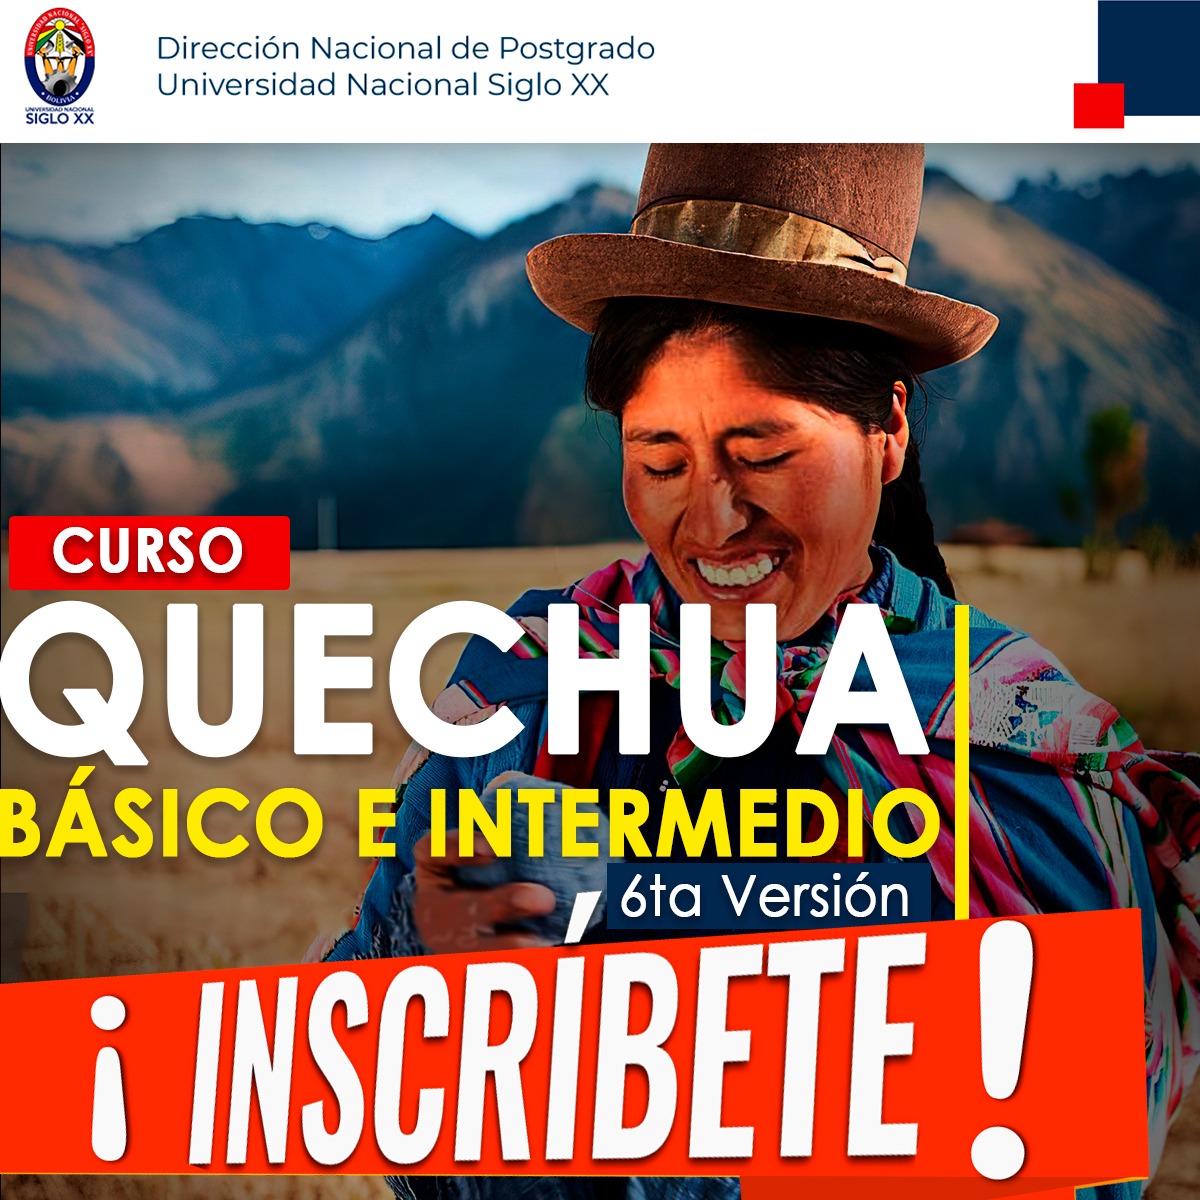 Esam Cursos Quechua Básico e Intermedio